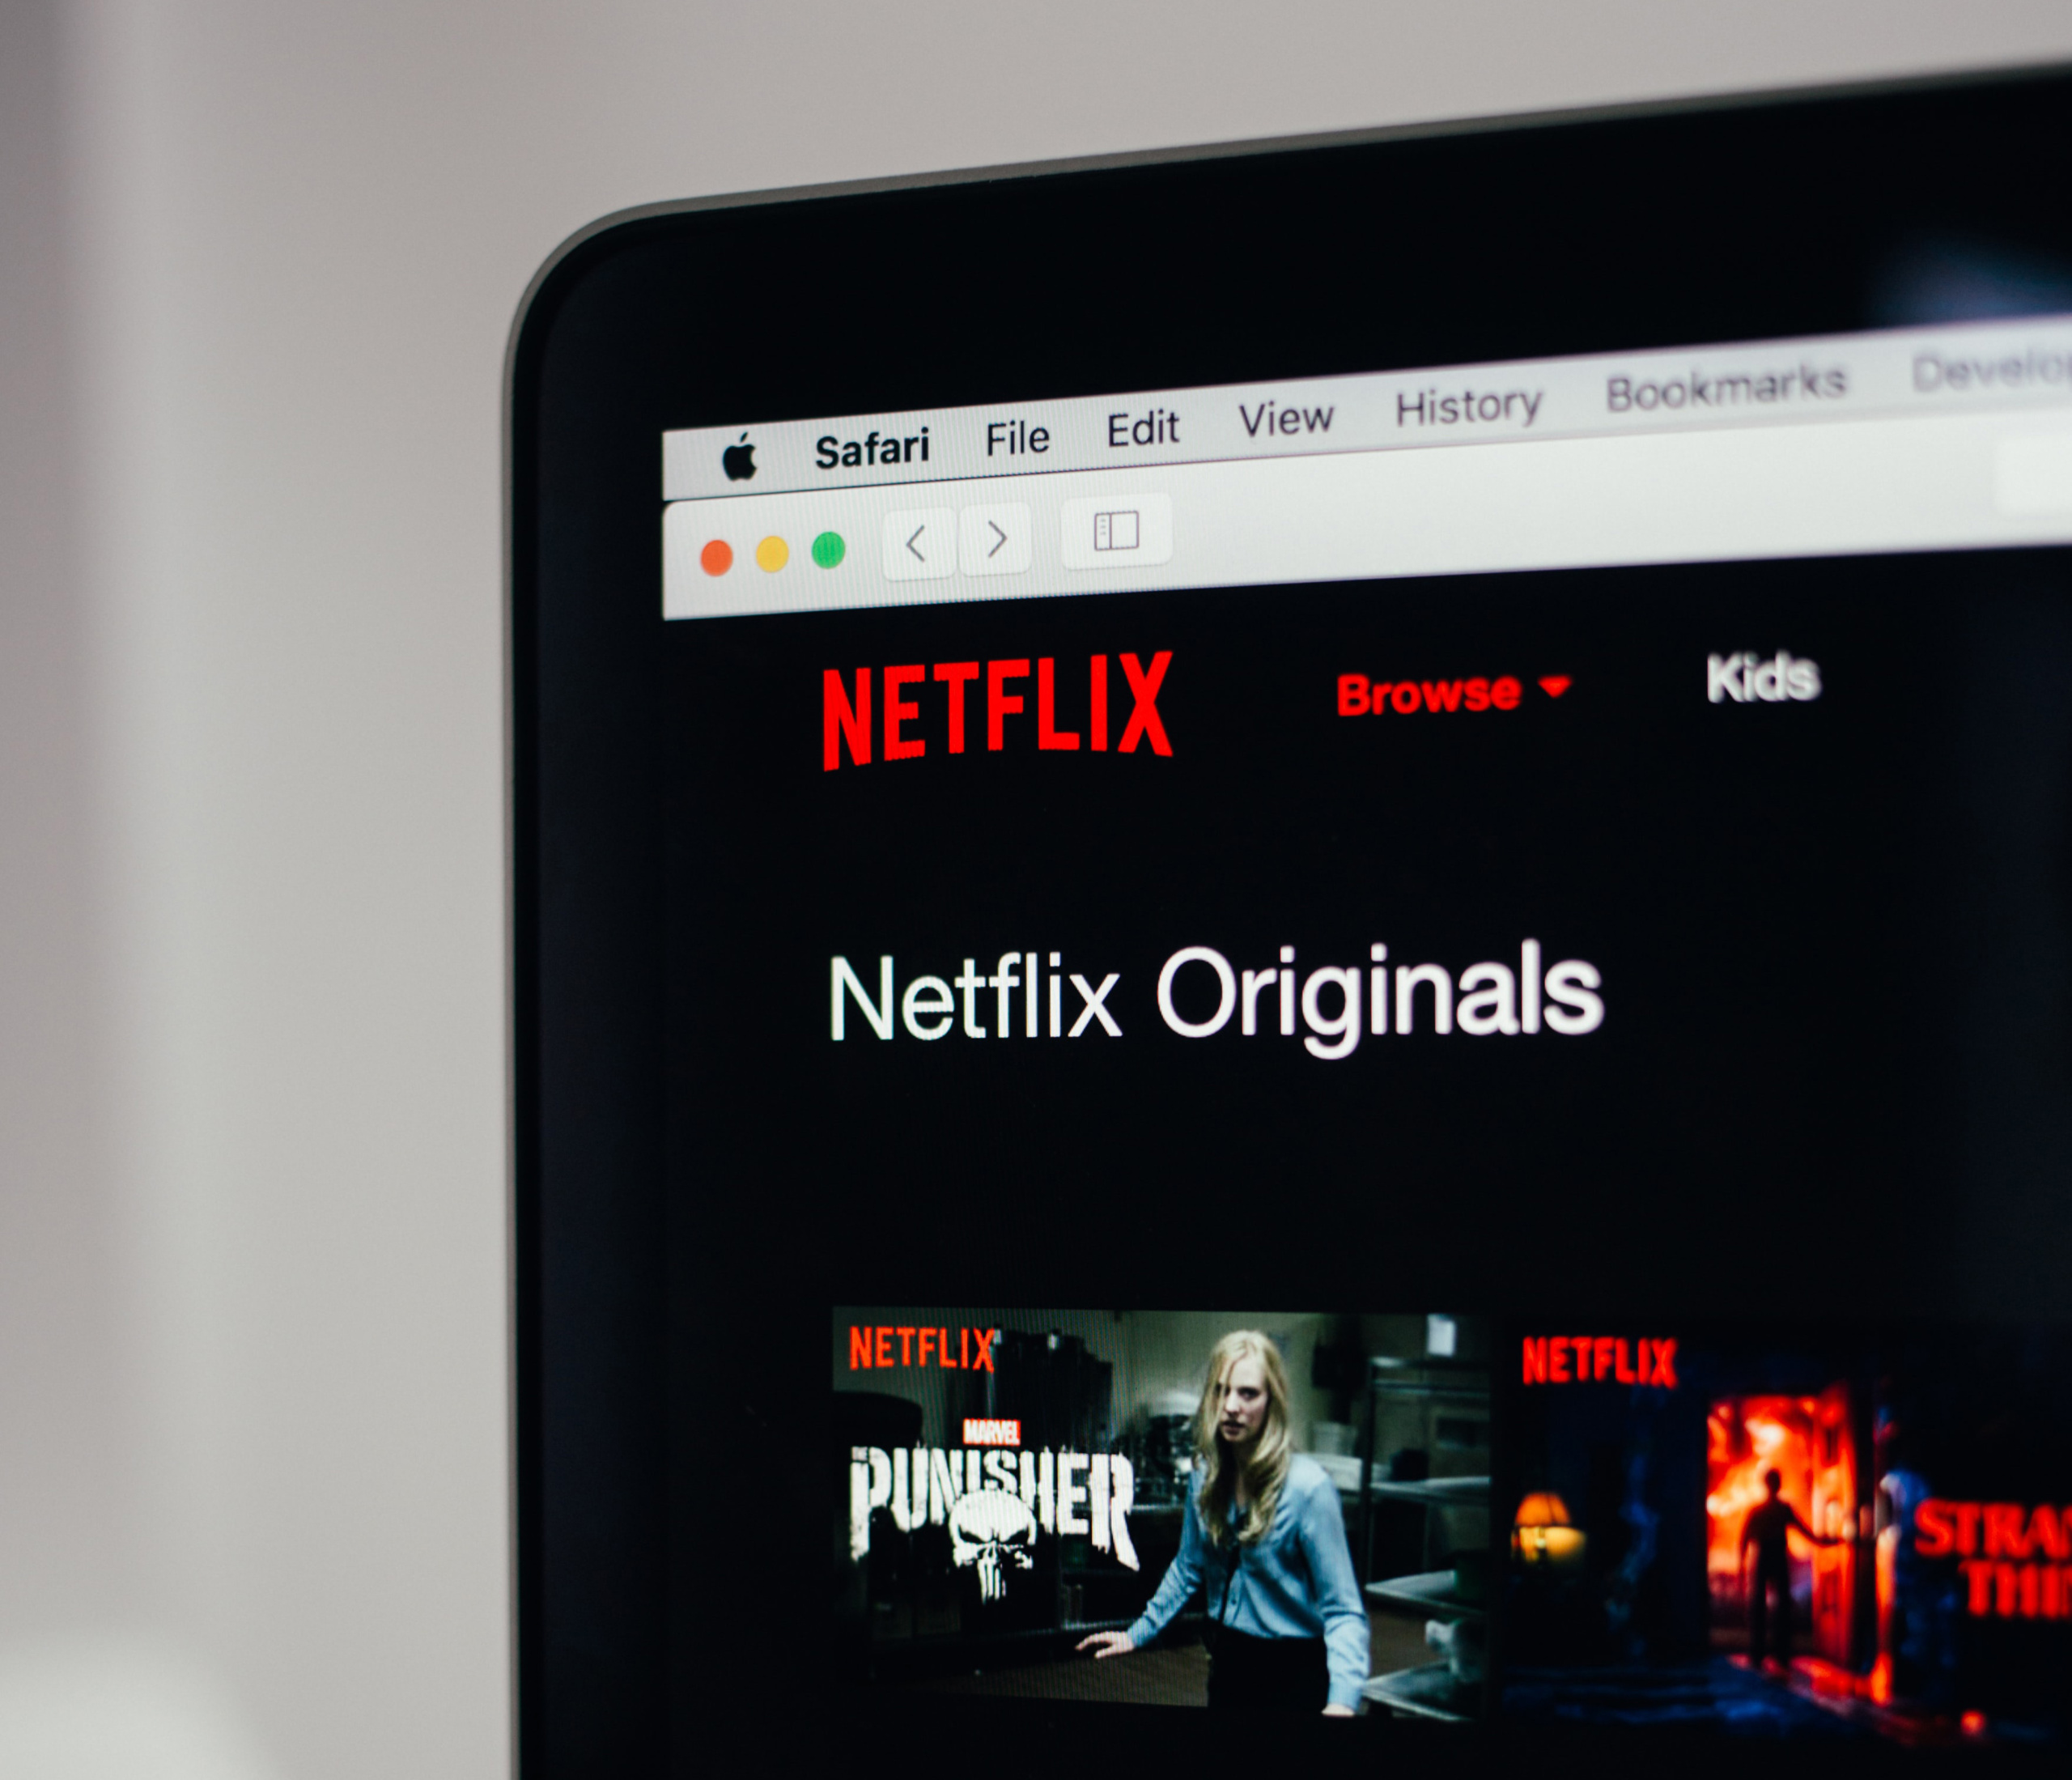 Более доступный тариф Netflix с рекламой (вероятно) неприятно удивит — отсутствием офлайн-просмотра и ограниченным каталогом